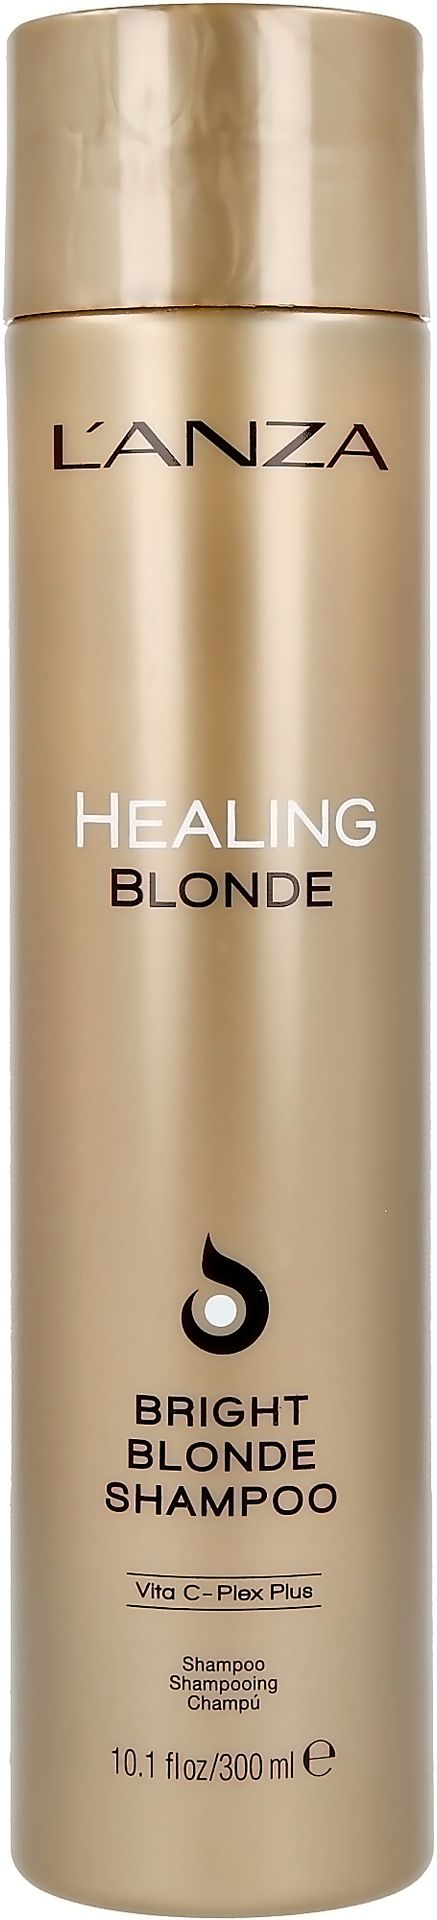 Lanza Healing Blonde Szampon do włosów 300 ml